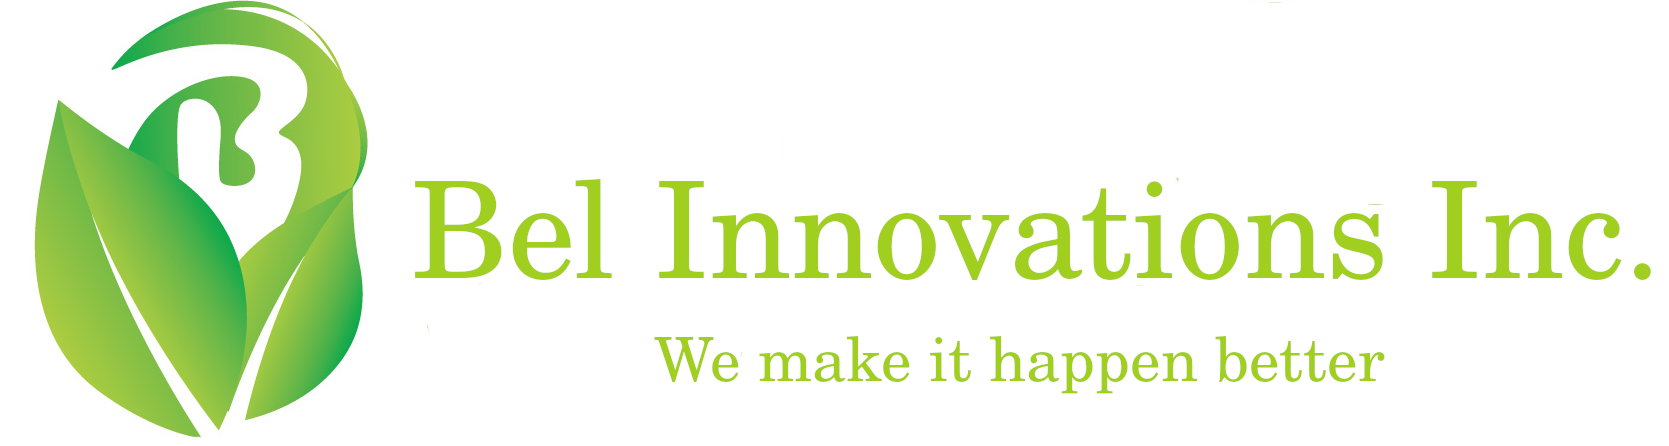 Bel Innovations Inc.